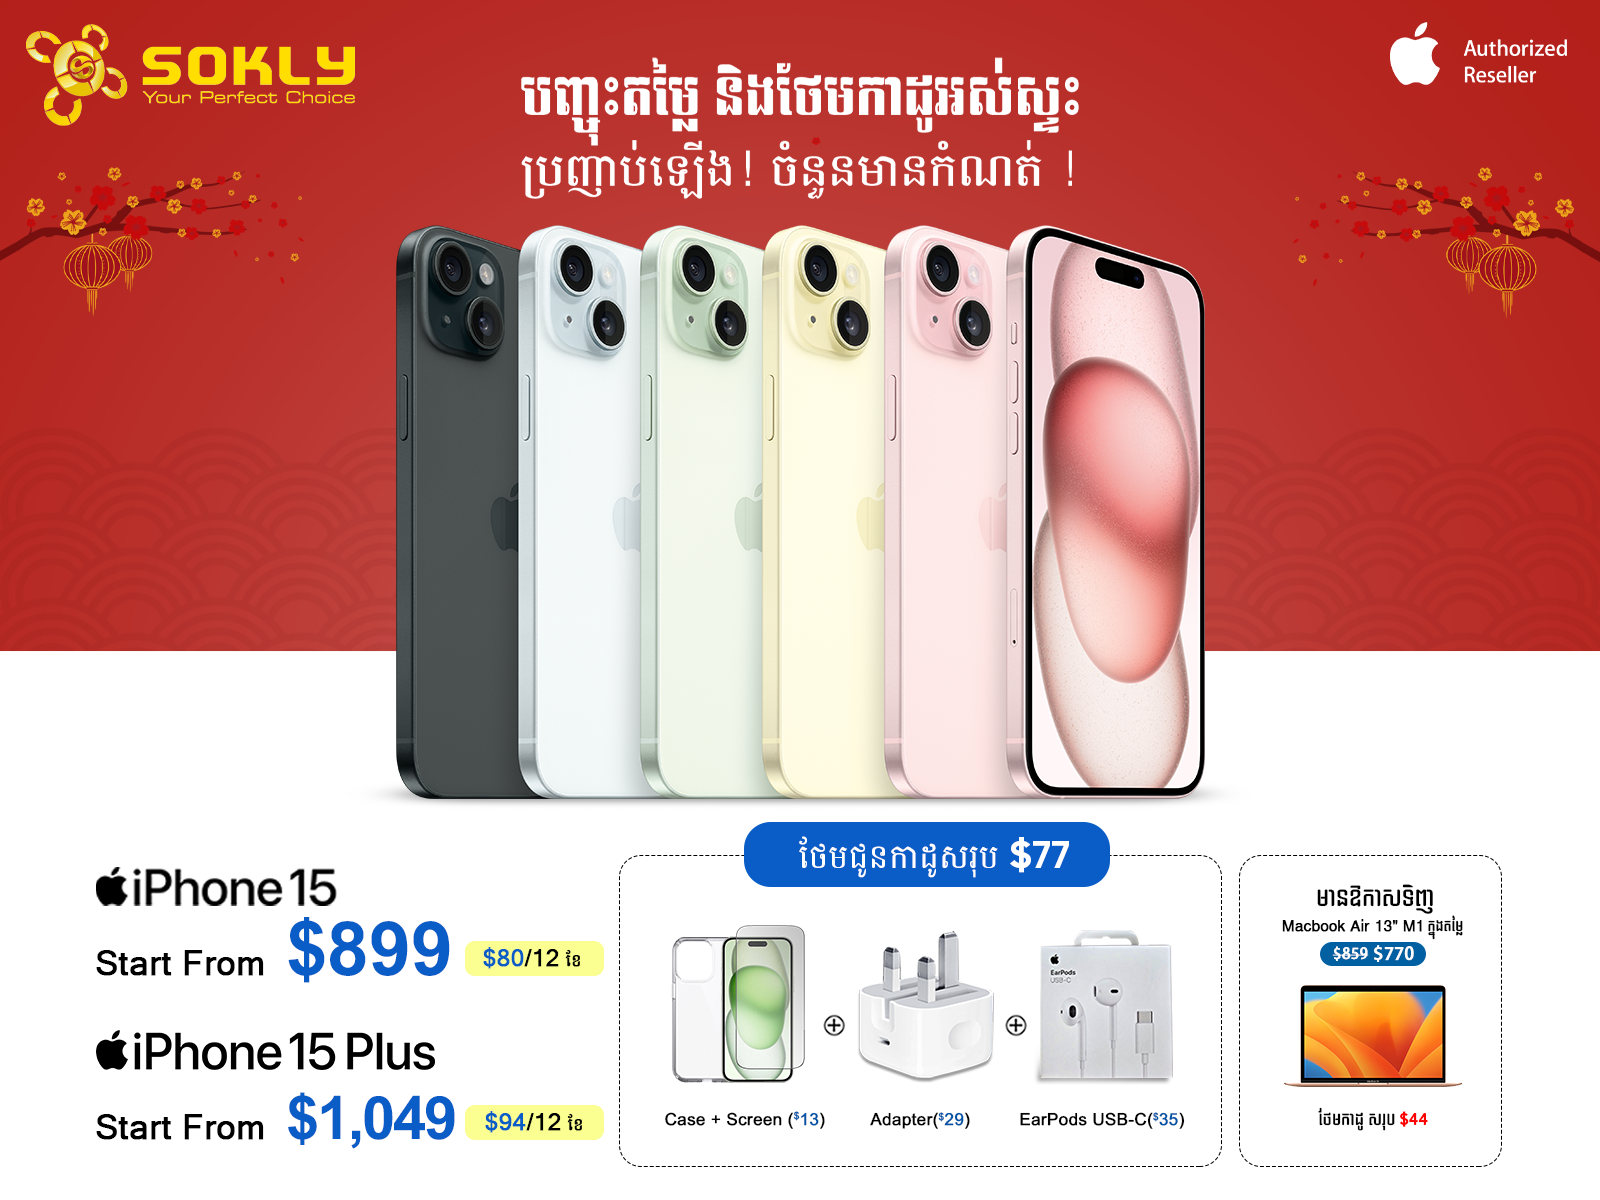 Tecno Pova​​ 5 Pro 256G+8G ធានា1ឆ្នាំ - Smartphone, Tablet, Accessories in  Cambodia